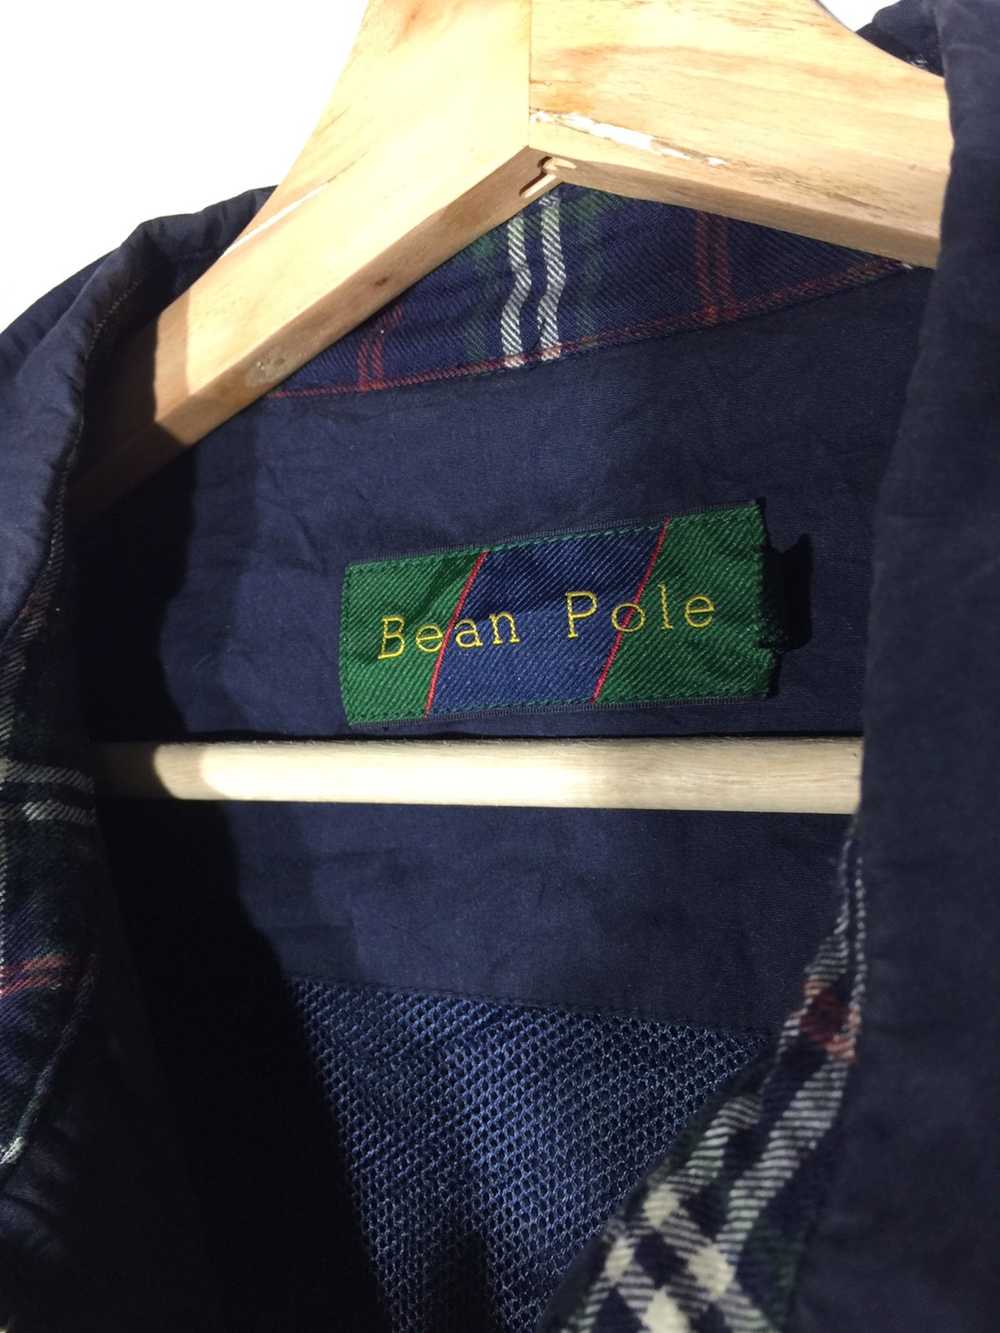 Bean Pole × Other beam pole jacket - image 3